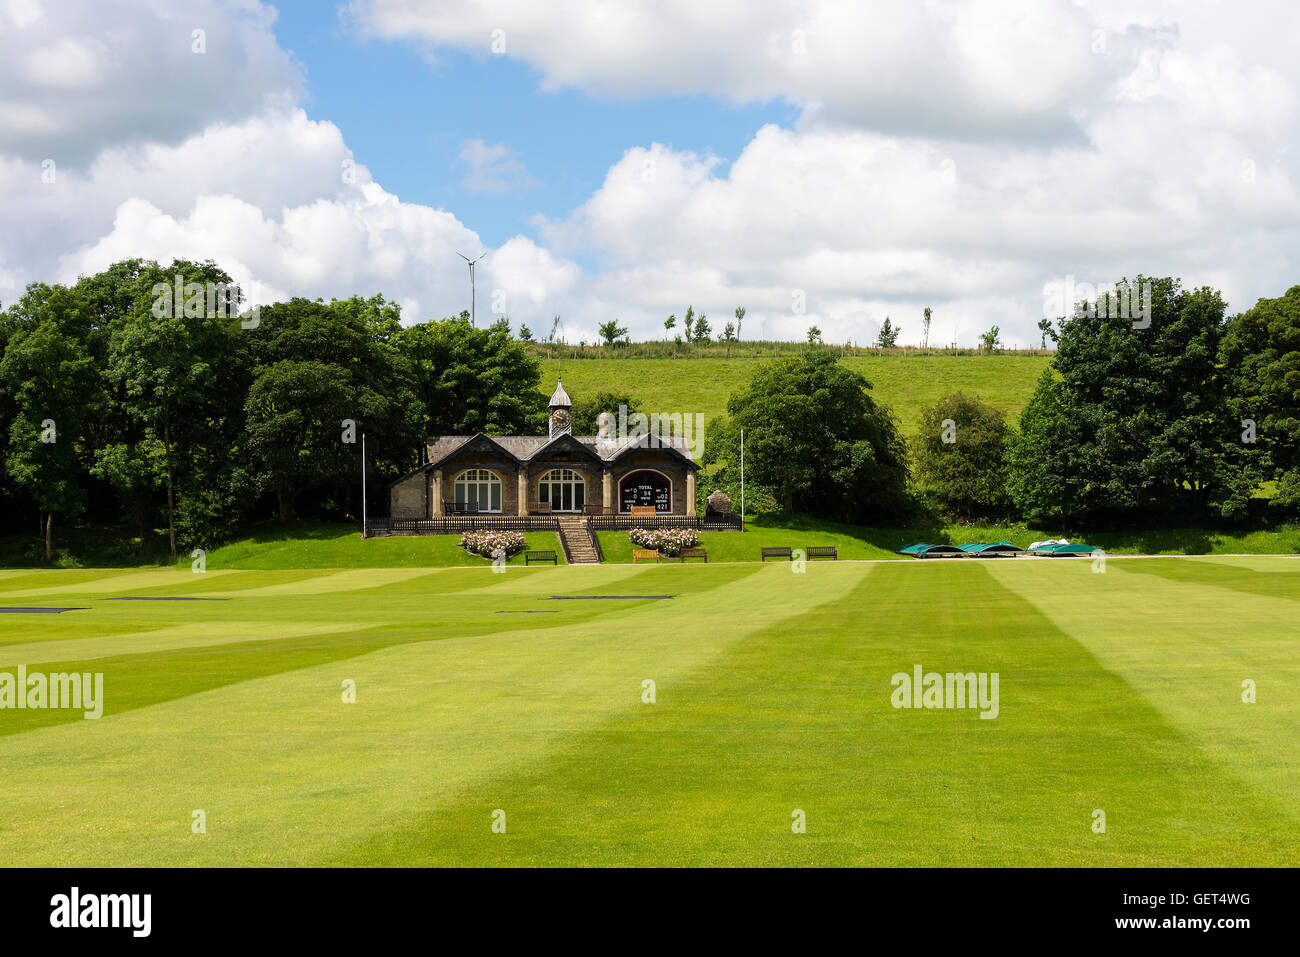 Le pavillon de cricket et la masse à l'école près de Giggleswick Régler North Yorkshire England Royaume-Uni UK Banque D'Images